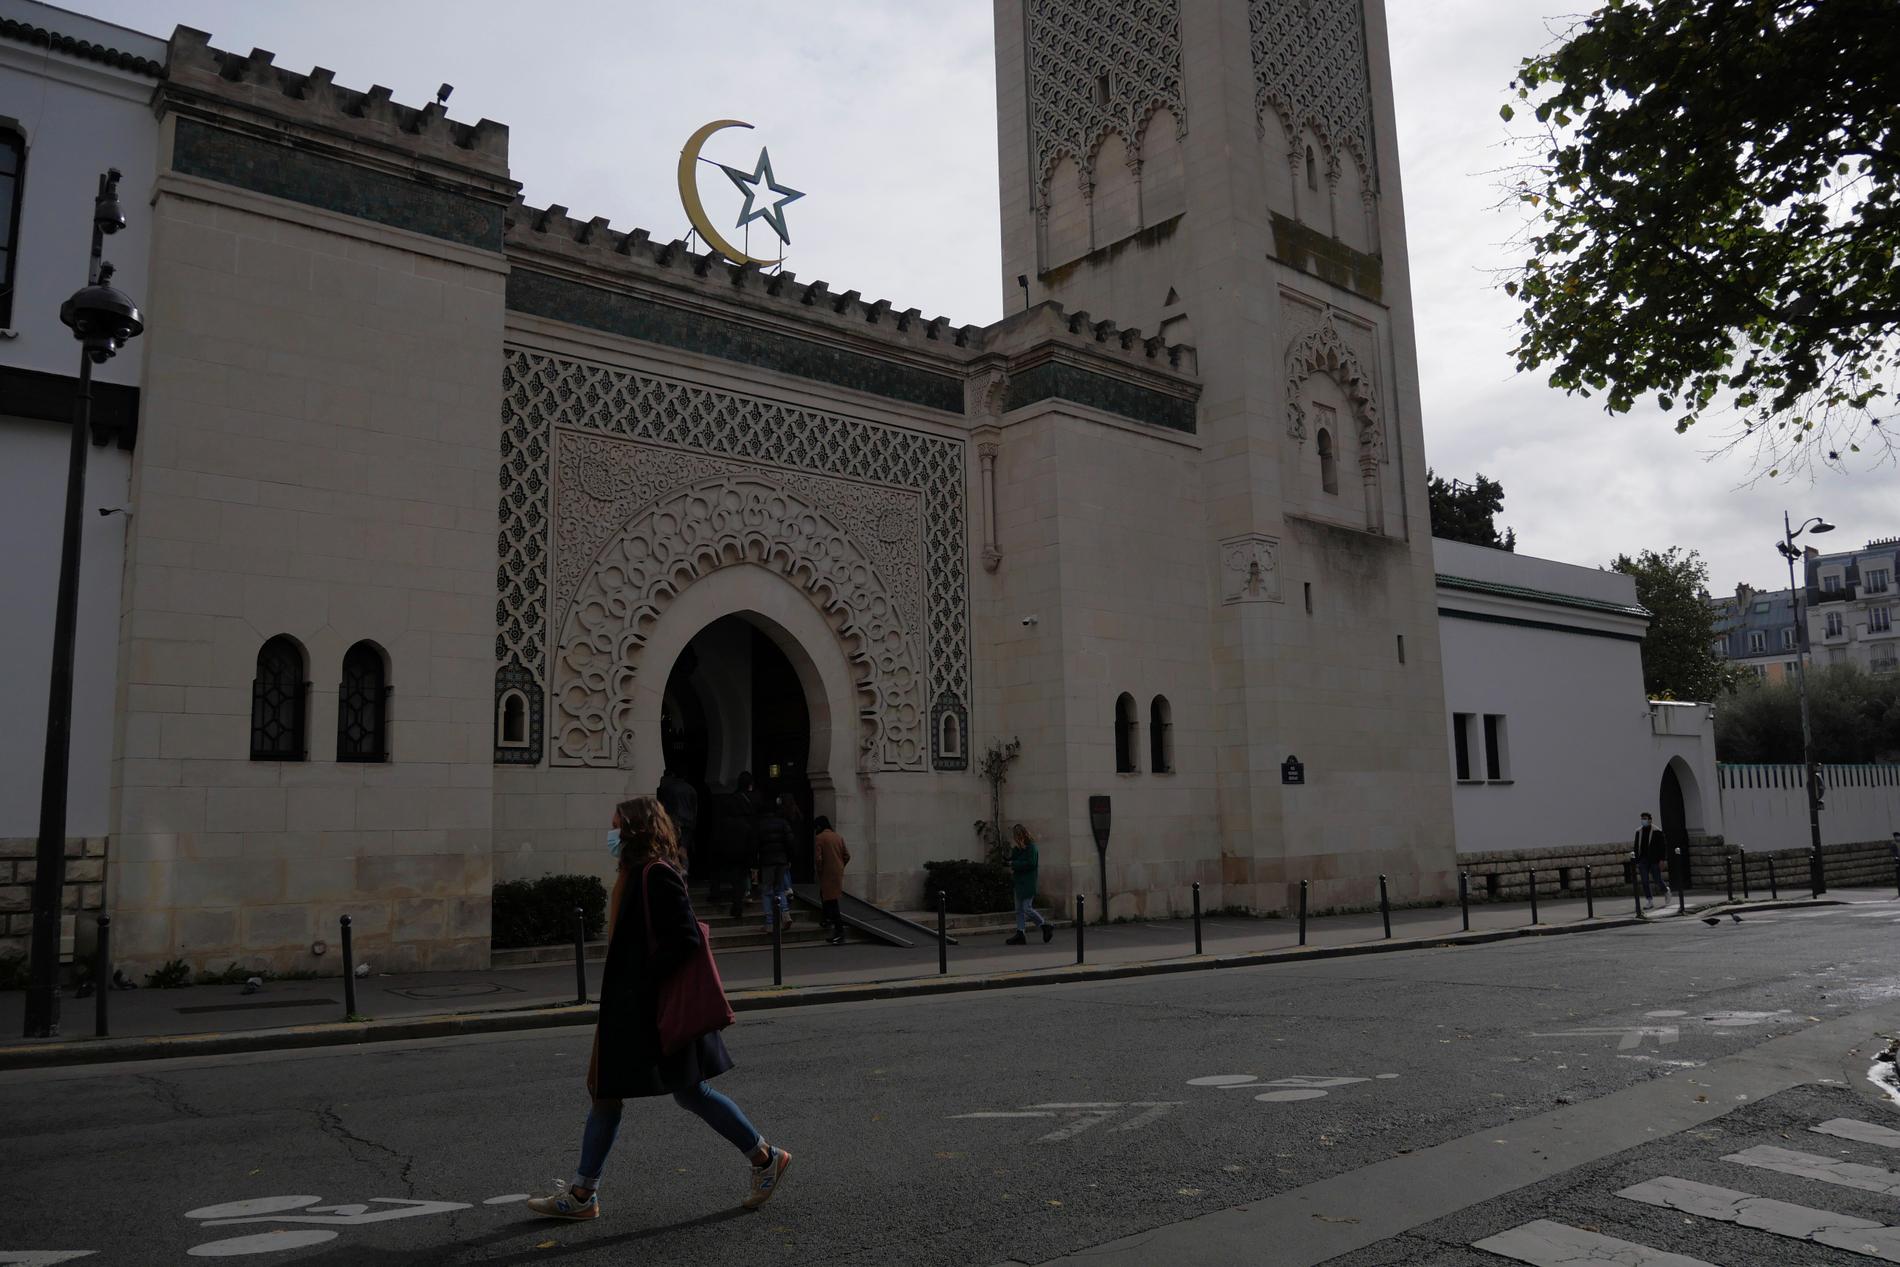 Frankrikes muslimer är på väg att få en gemensam stadga med grundläggande värderingar. Arkivbild på en moské i Paris.